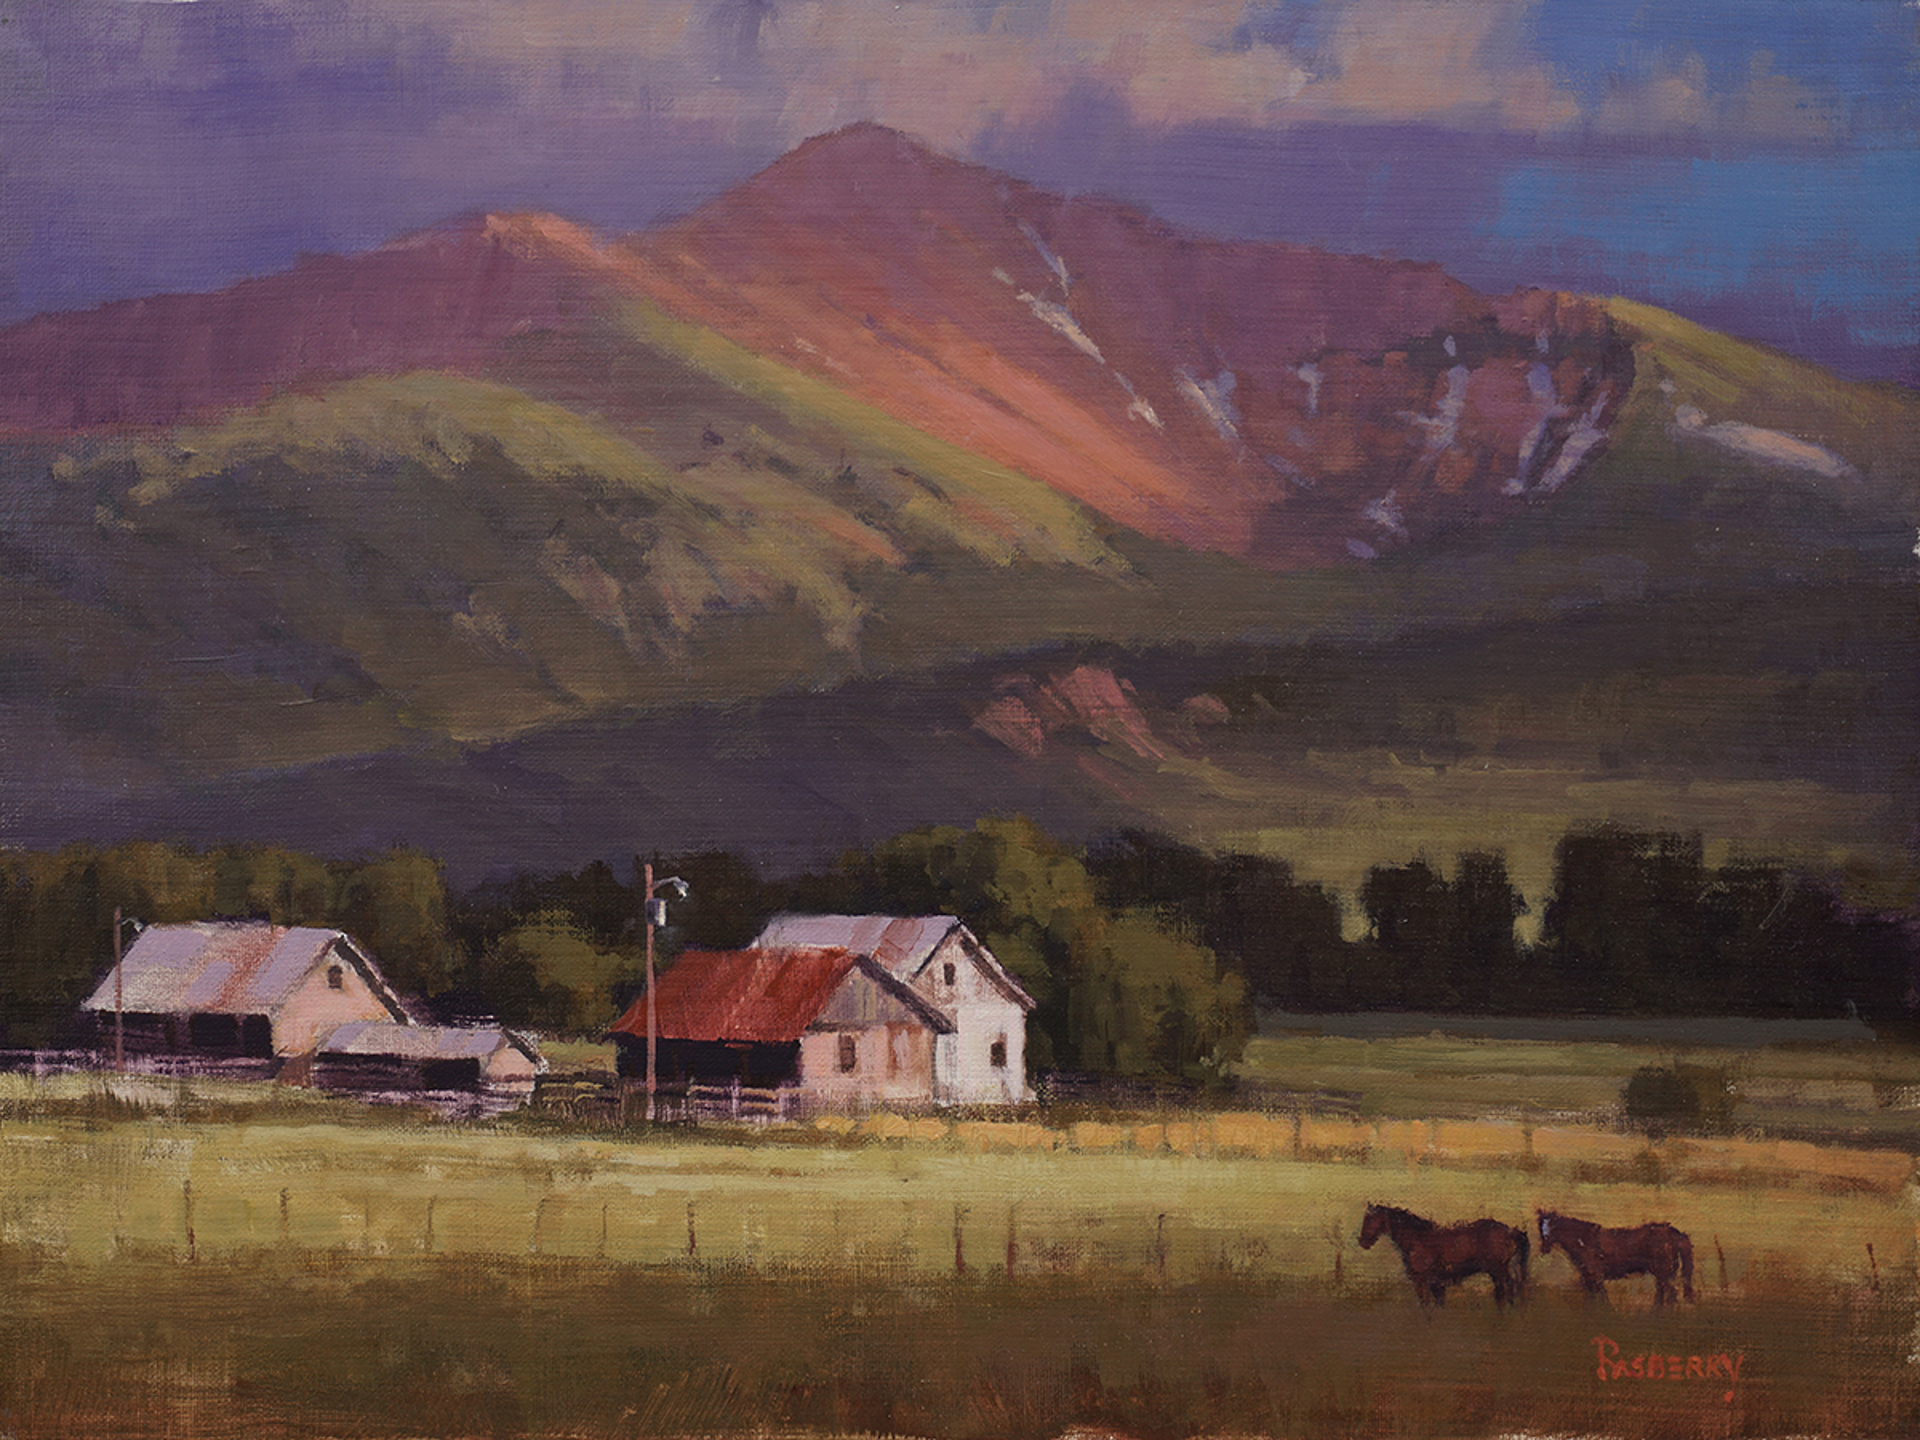 High Mountain Ranch by John Rasberry